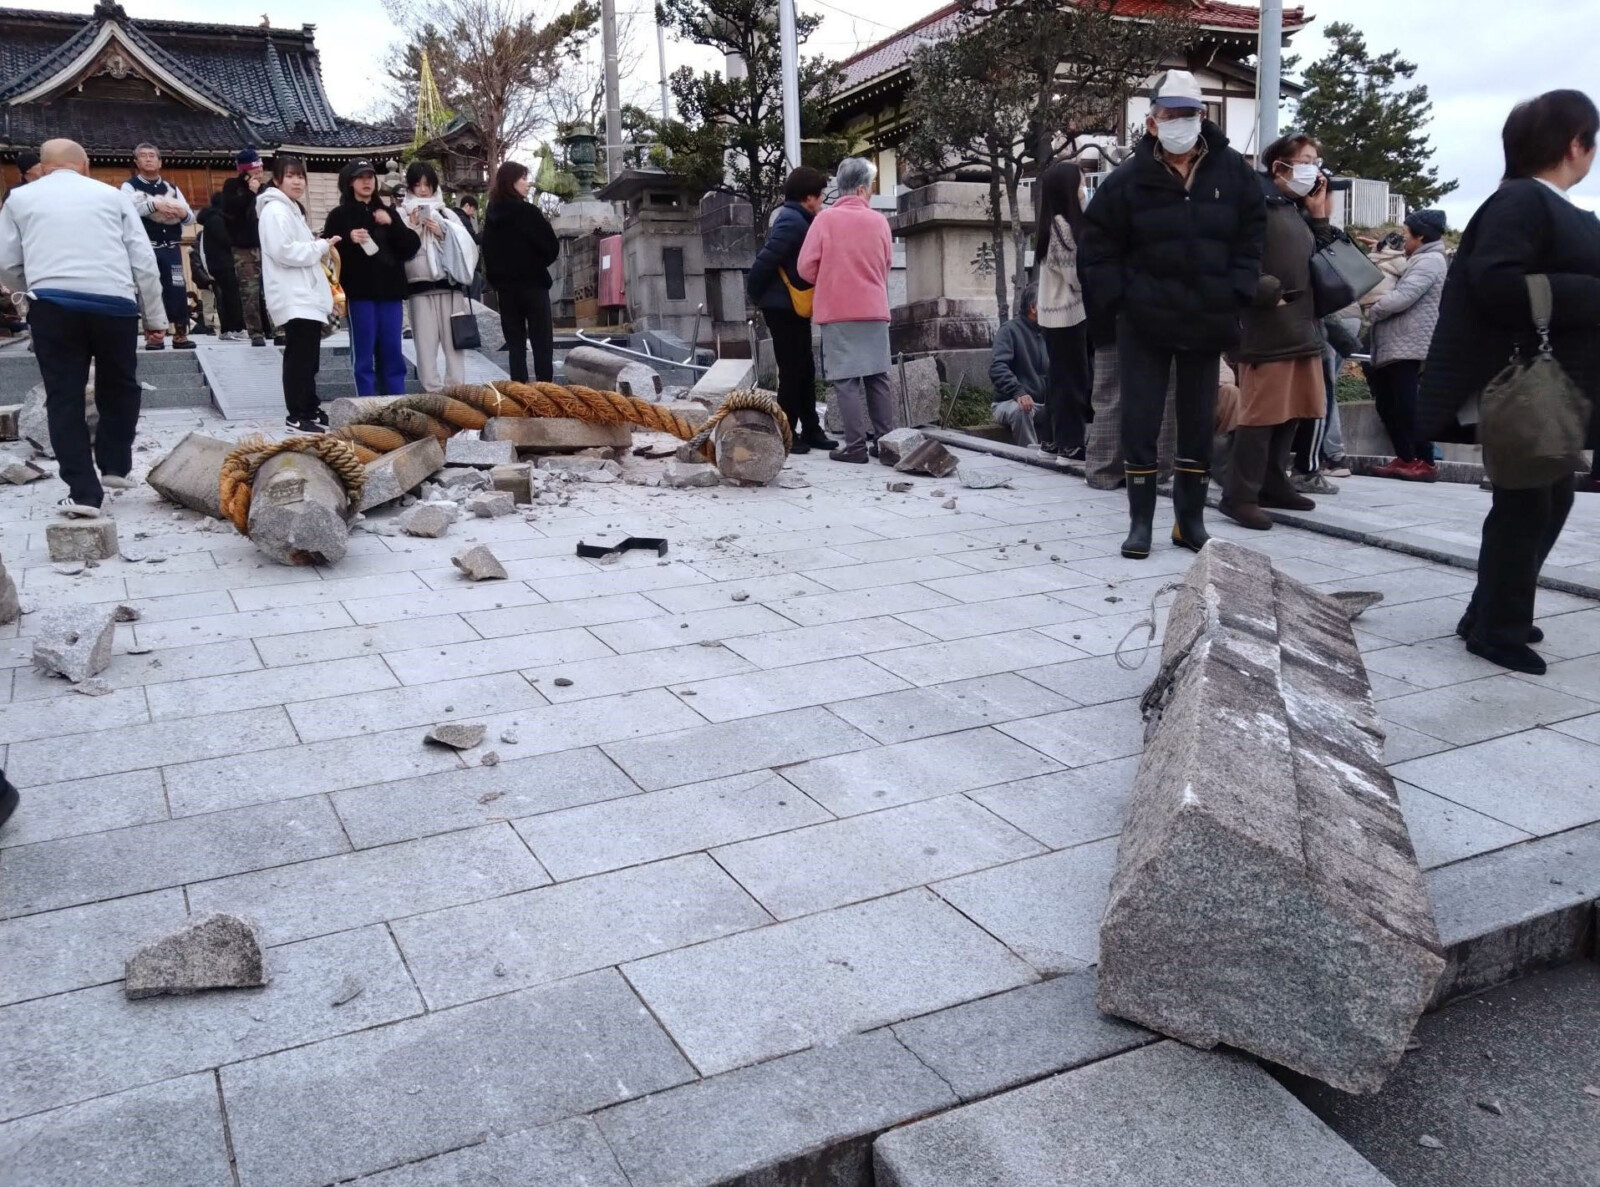 הרס בקנזאווה במרכז יפן בעקבות רעידת האדמה (צילום: Kyodo via Reuters)